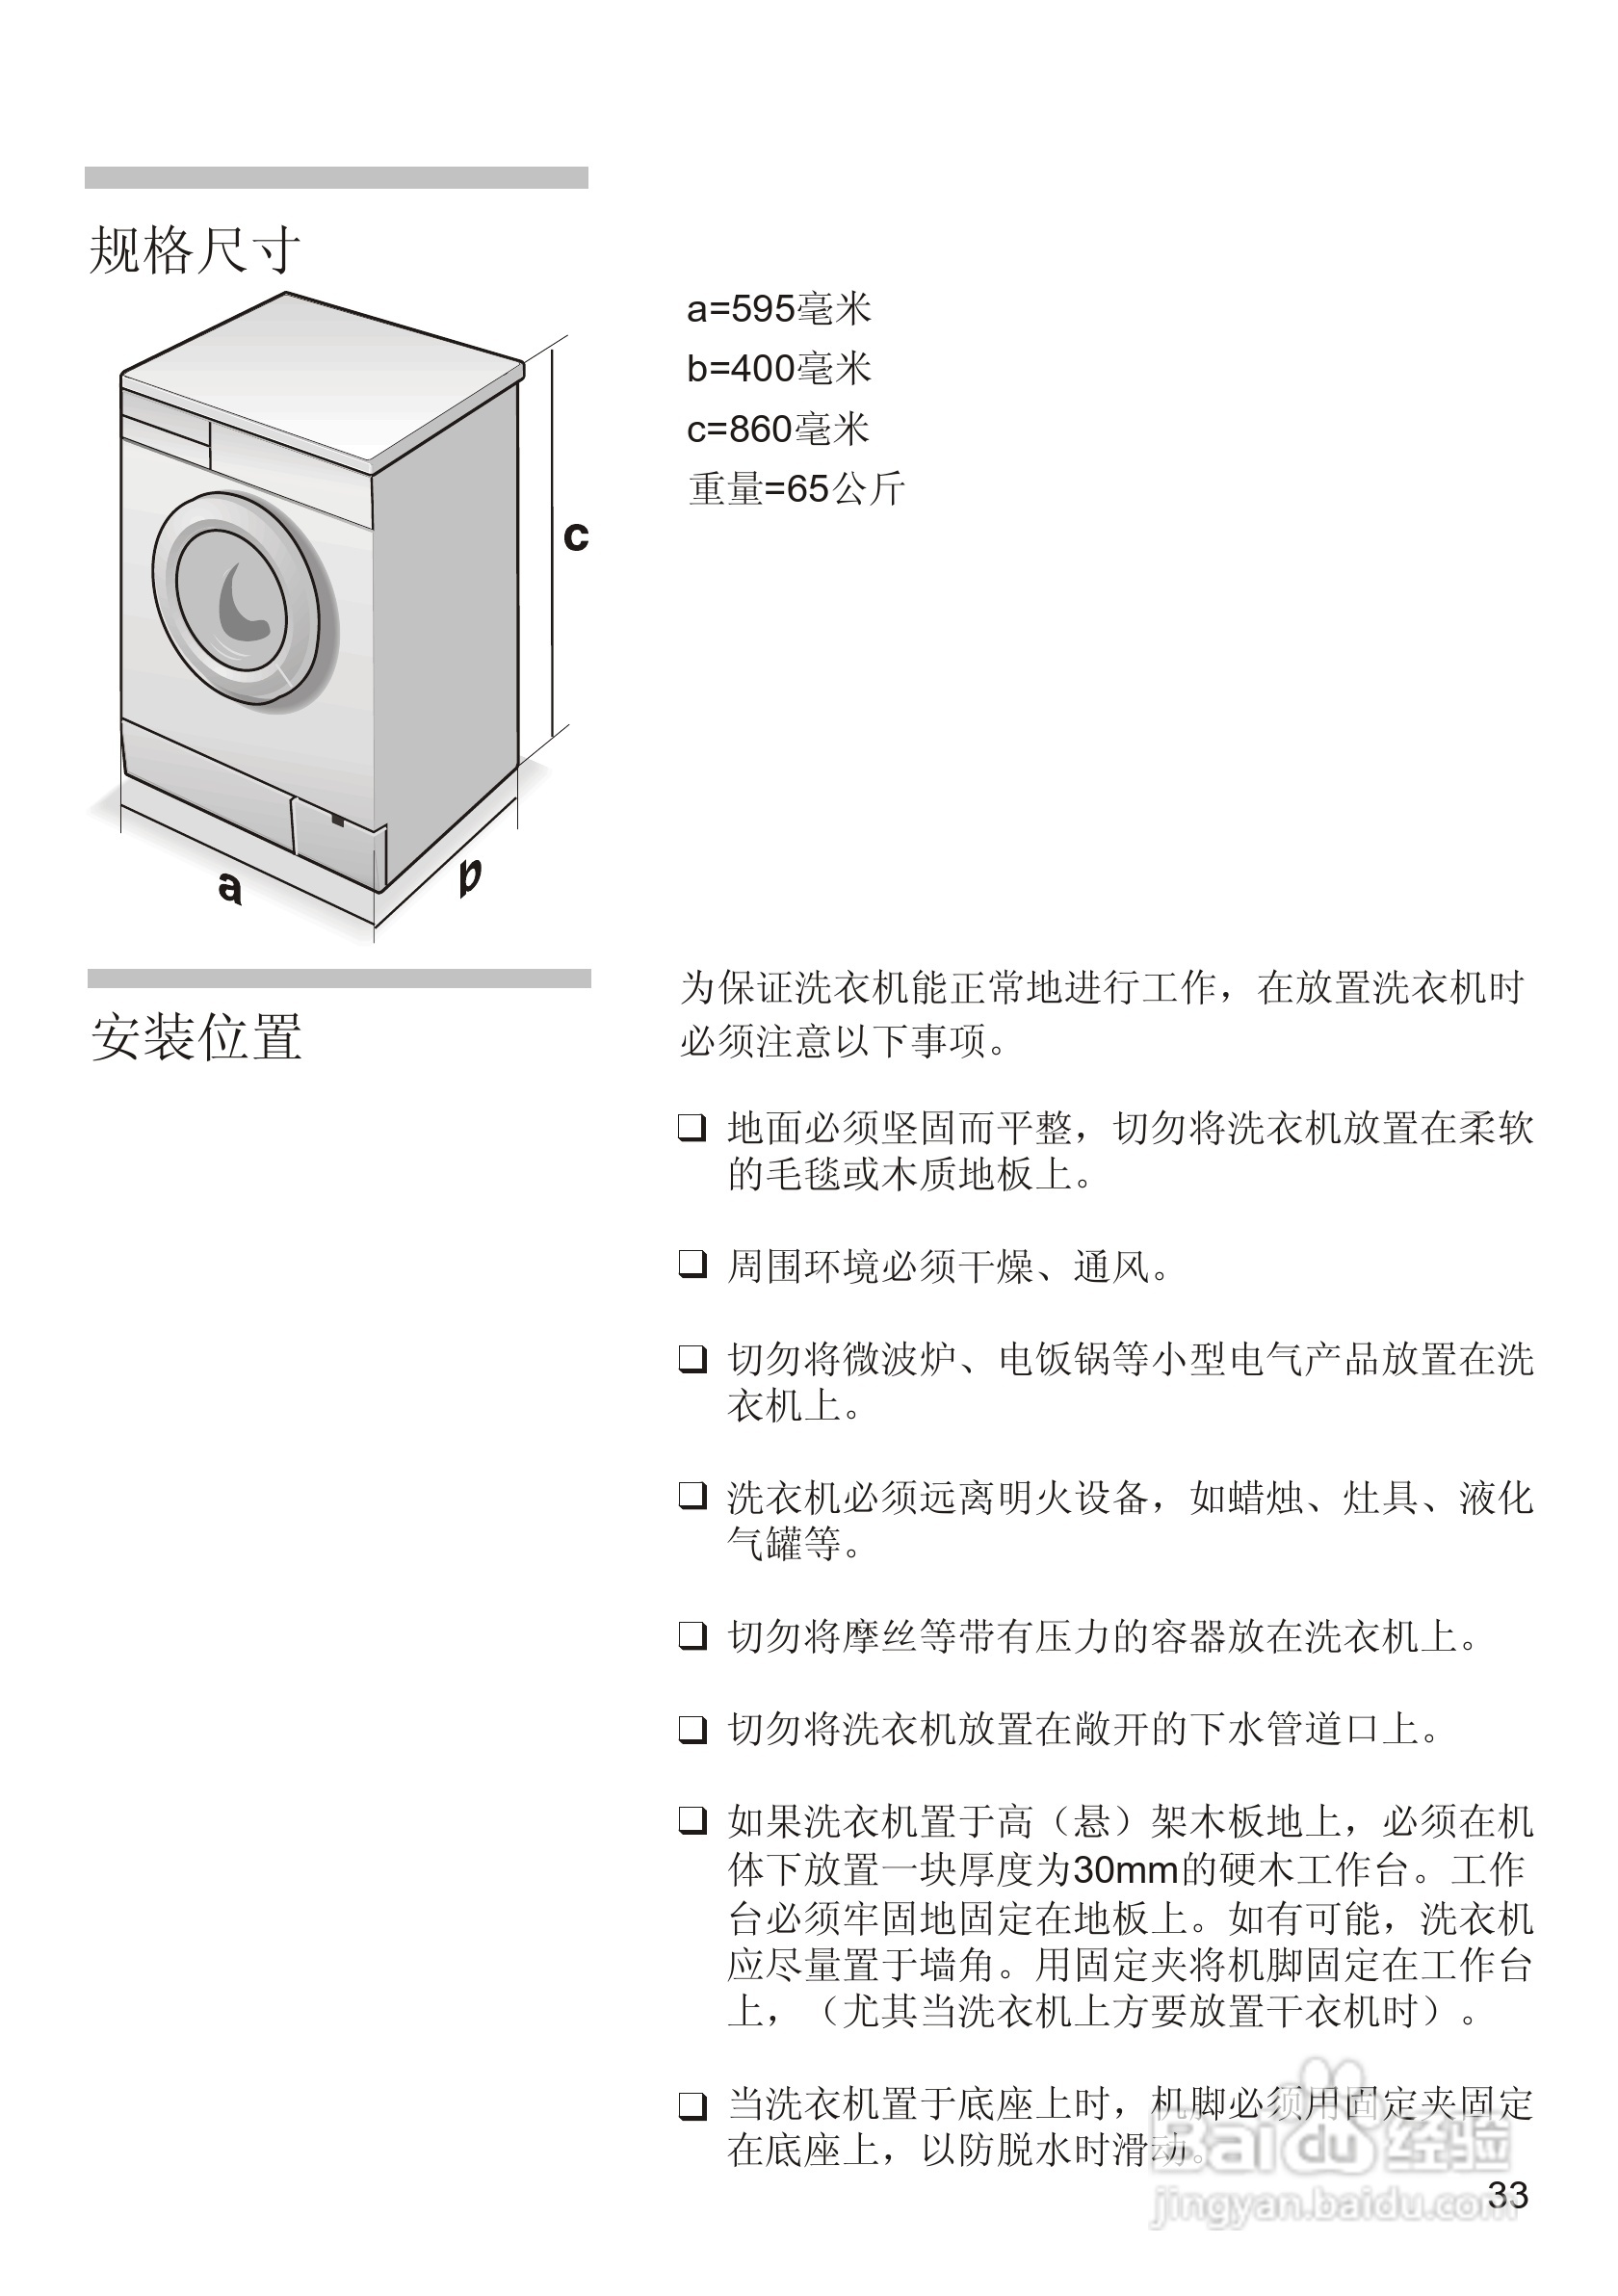 西门子wm1078xs 洗衣机说明书:[4]